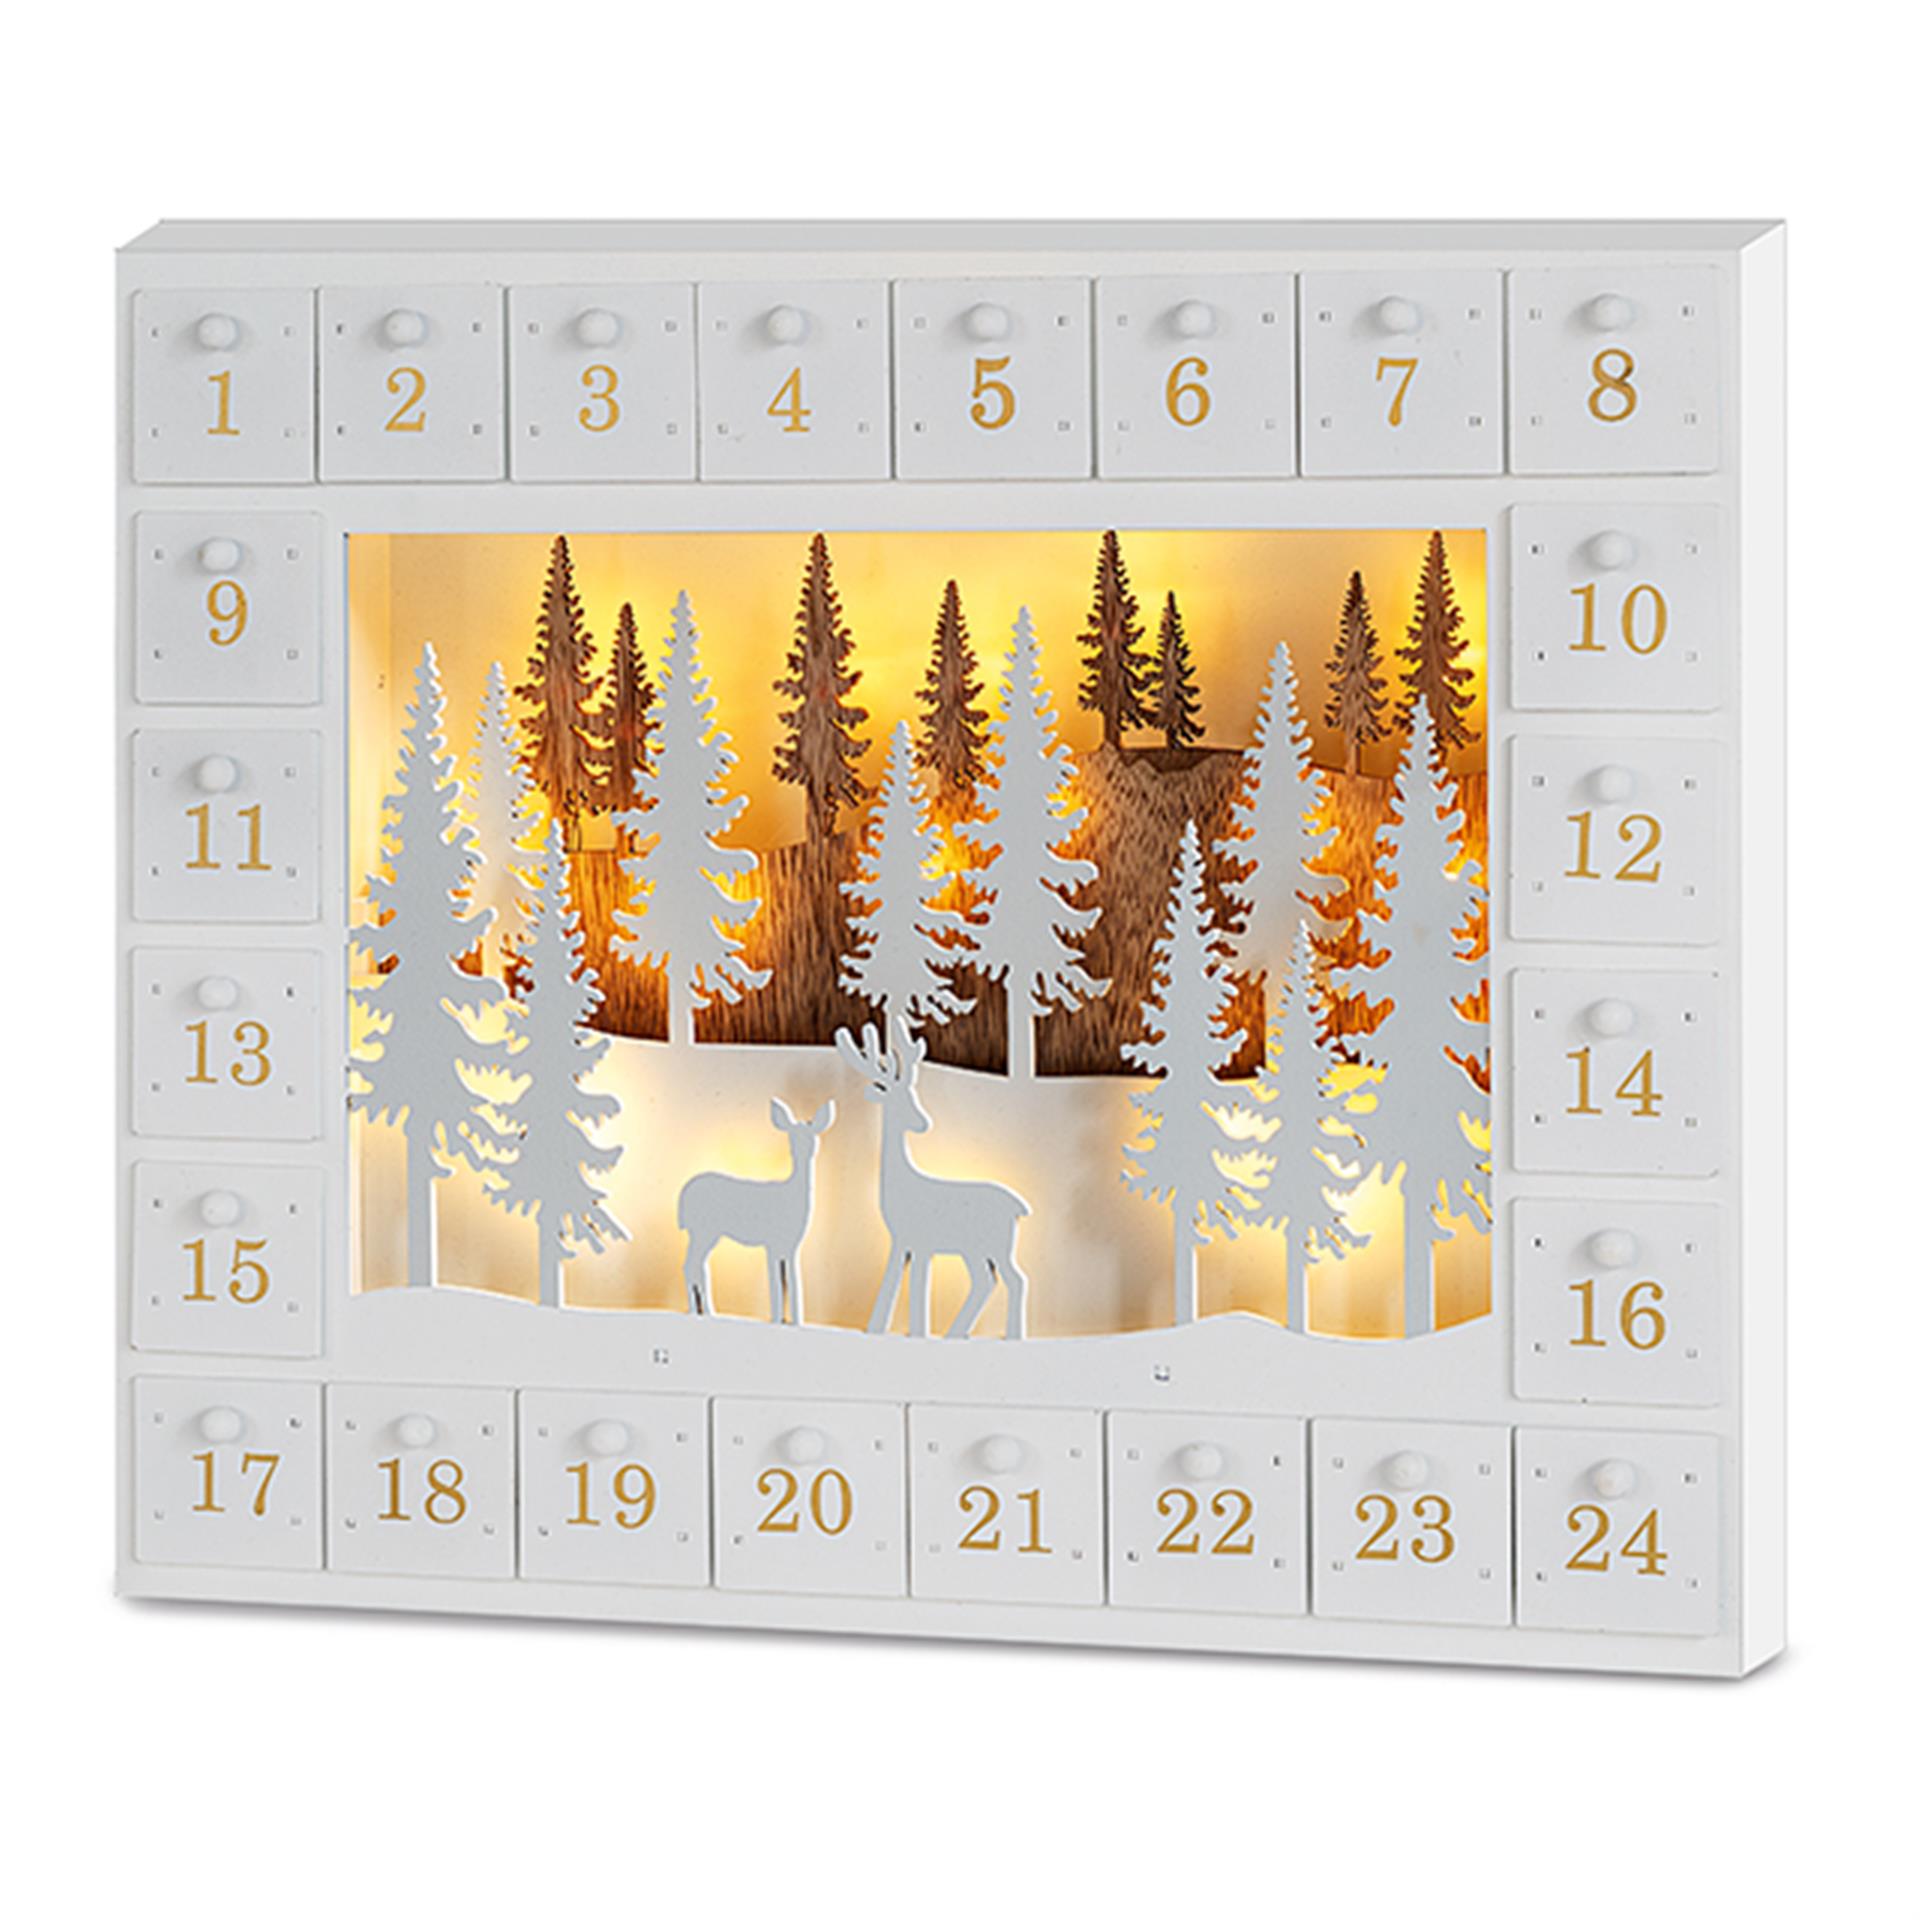 Calendario d'avvento con bosco invernale